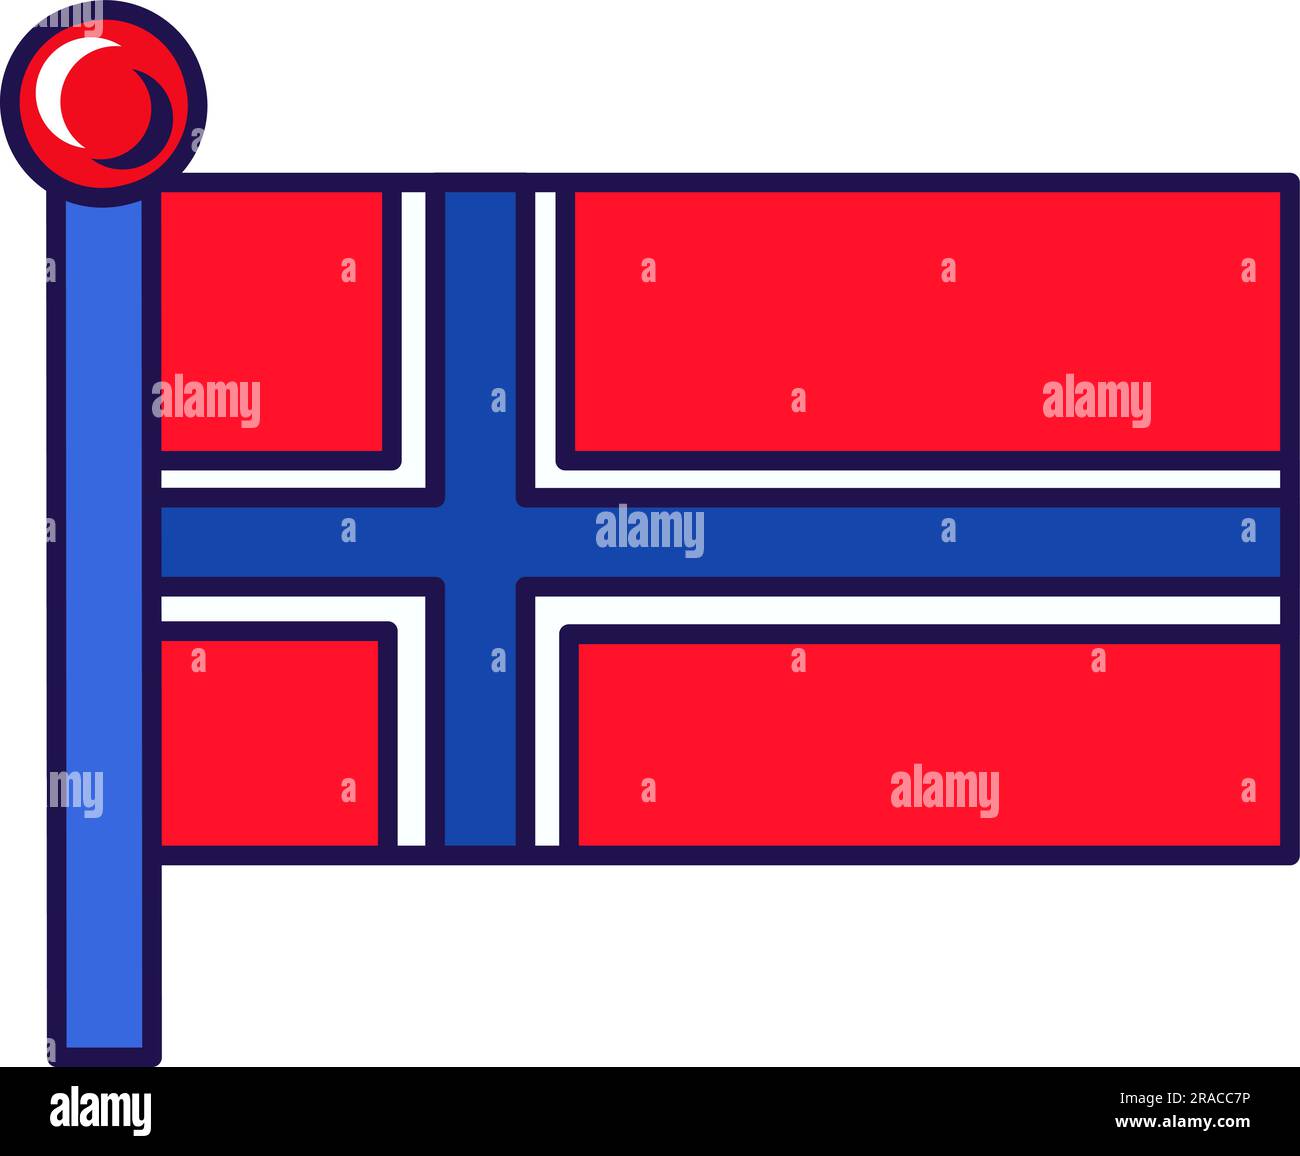 Die Flagge von Svalbard und jan mayen auf dem Flaggenmast-Vektor. Rotes Feld angegriffen mit weißem dunkelblauem nordischen Kreuz auf dem Königreich norwegen, Patriotiker und roya Stock Vektor